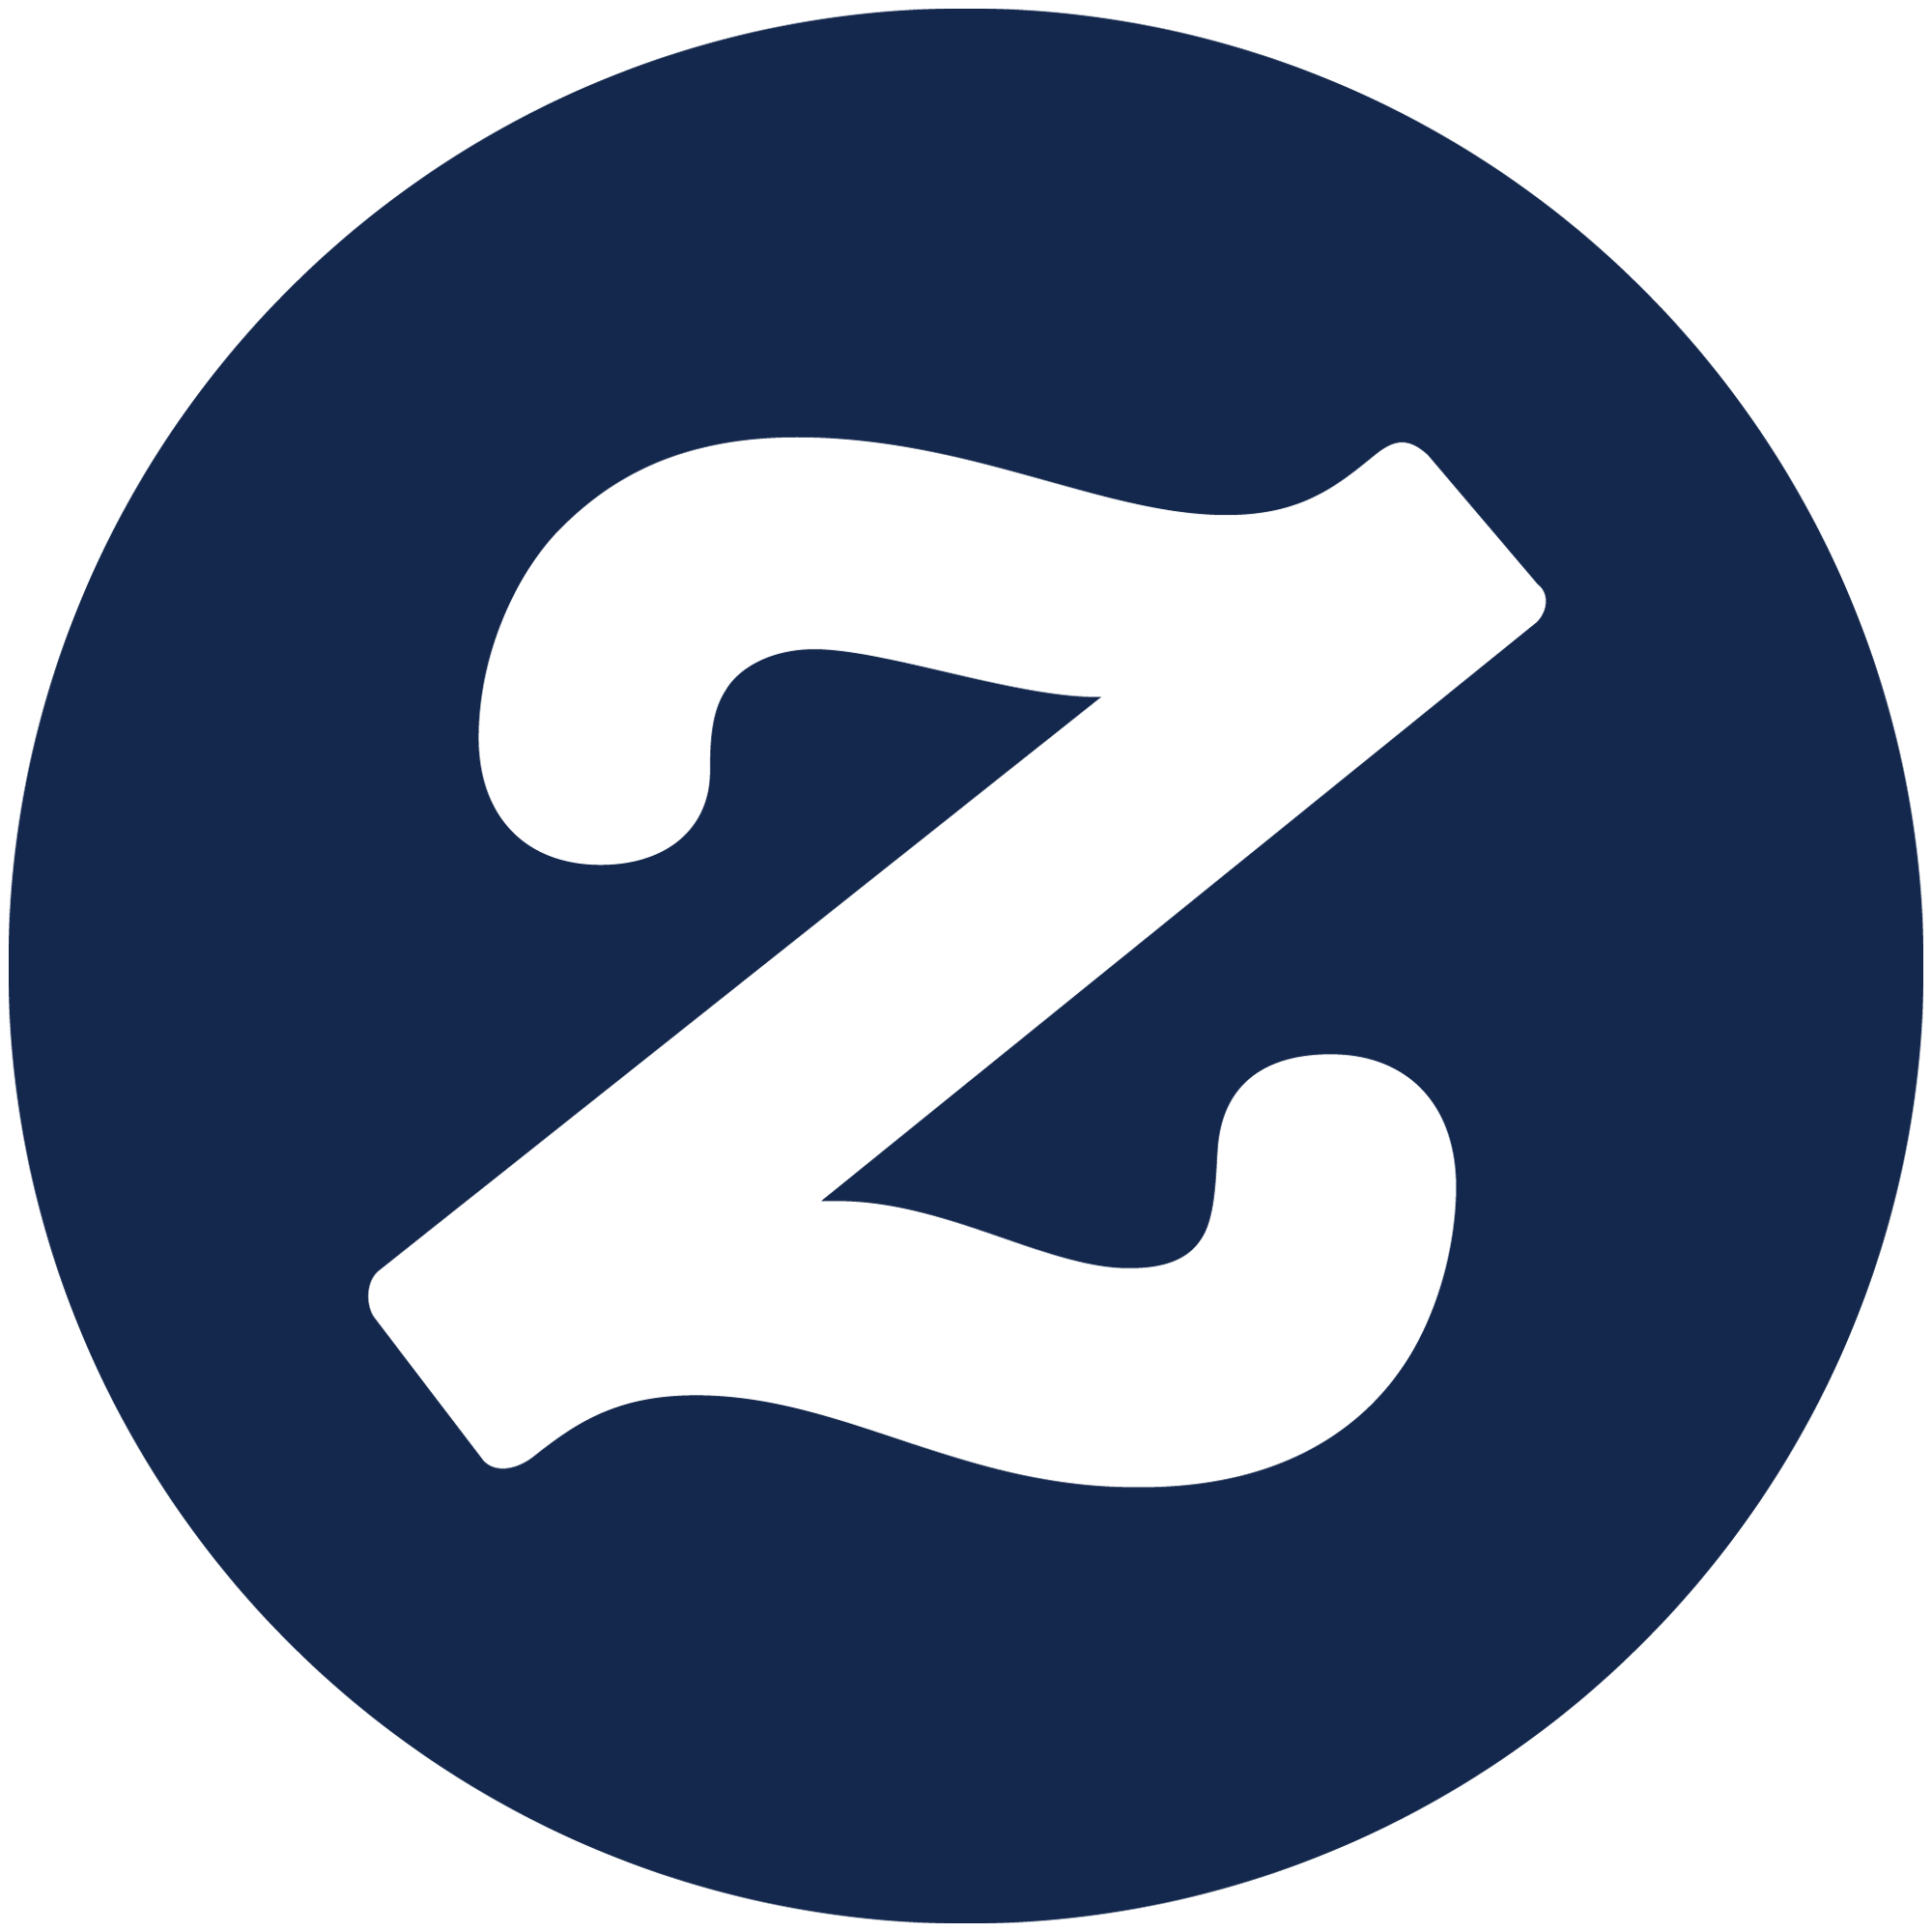 Author - Zazzle